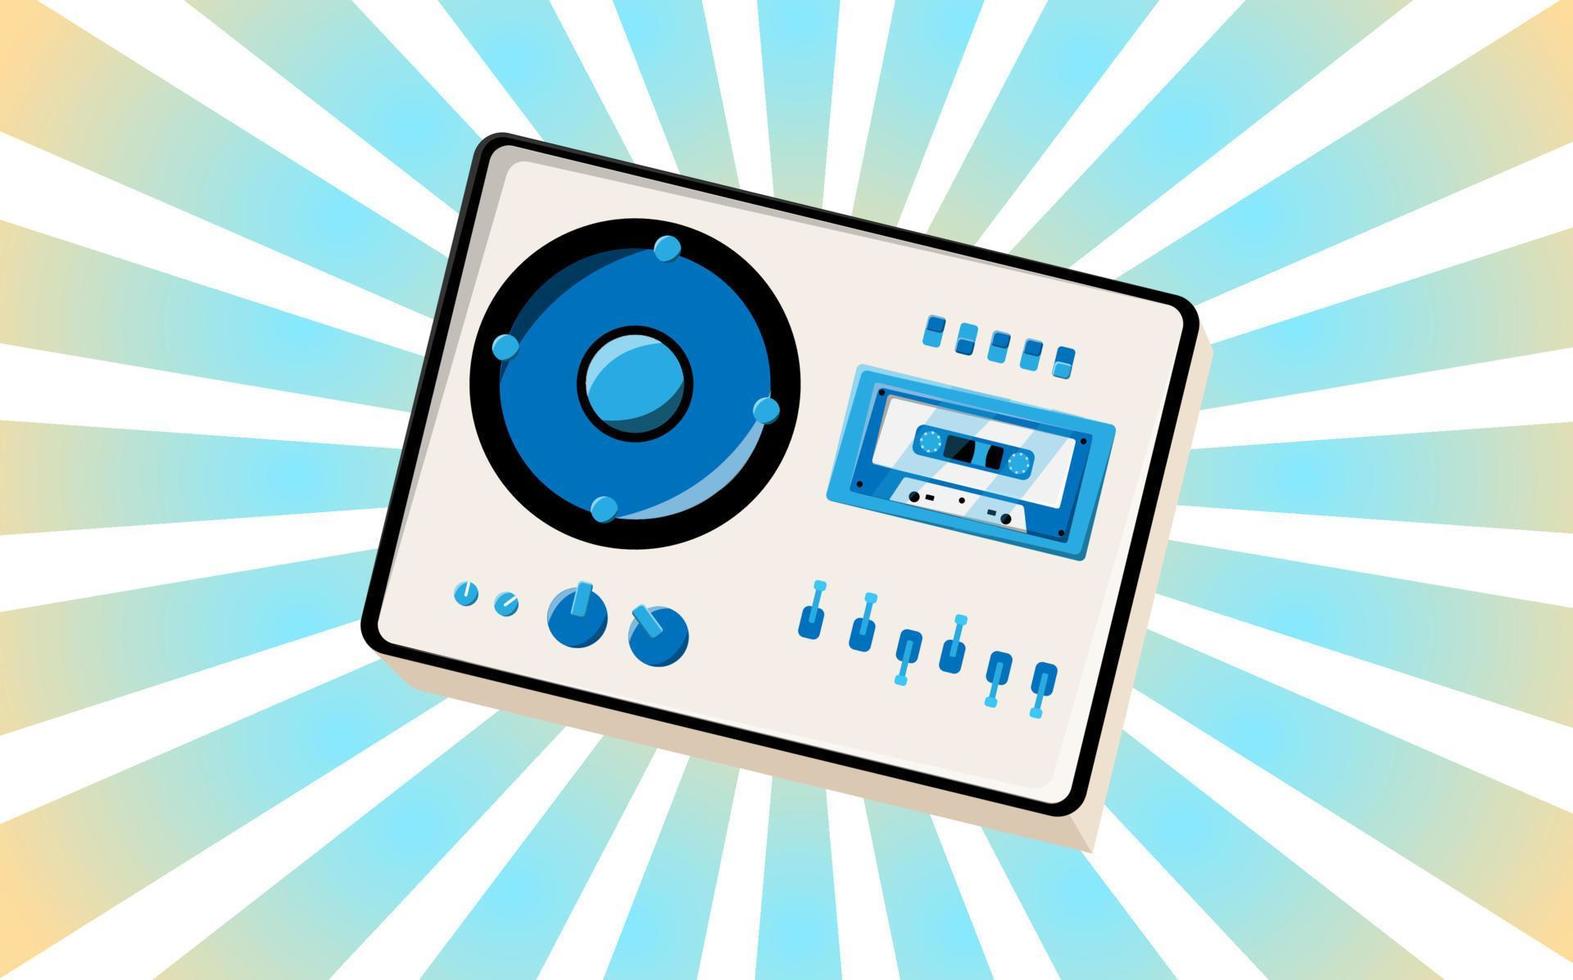 viejo afiche retro vintage con grabadora de casete de música con babbin de cinta magnética en carretes y altavoces de los años 70, 80, 90 el fondo de los rayos azules del sol. ilustración vectorial vector